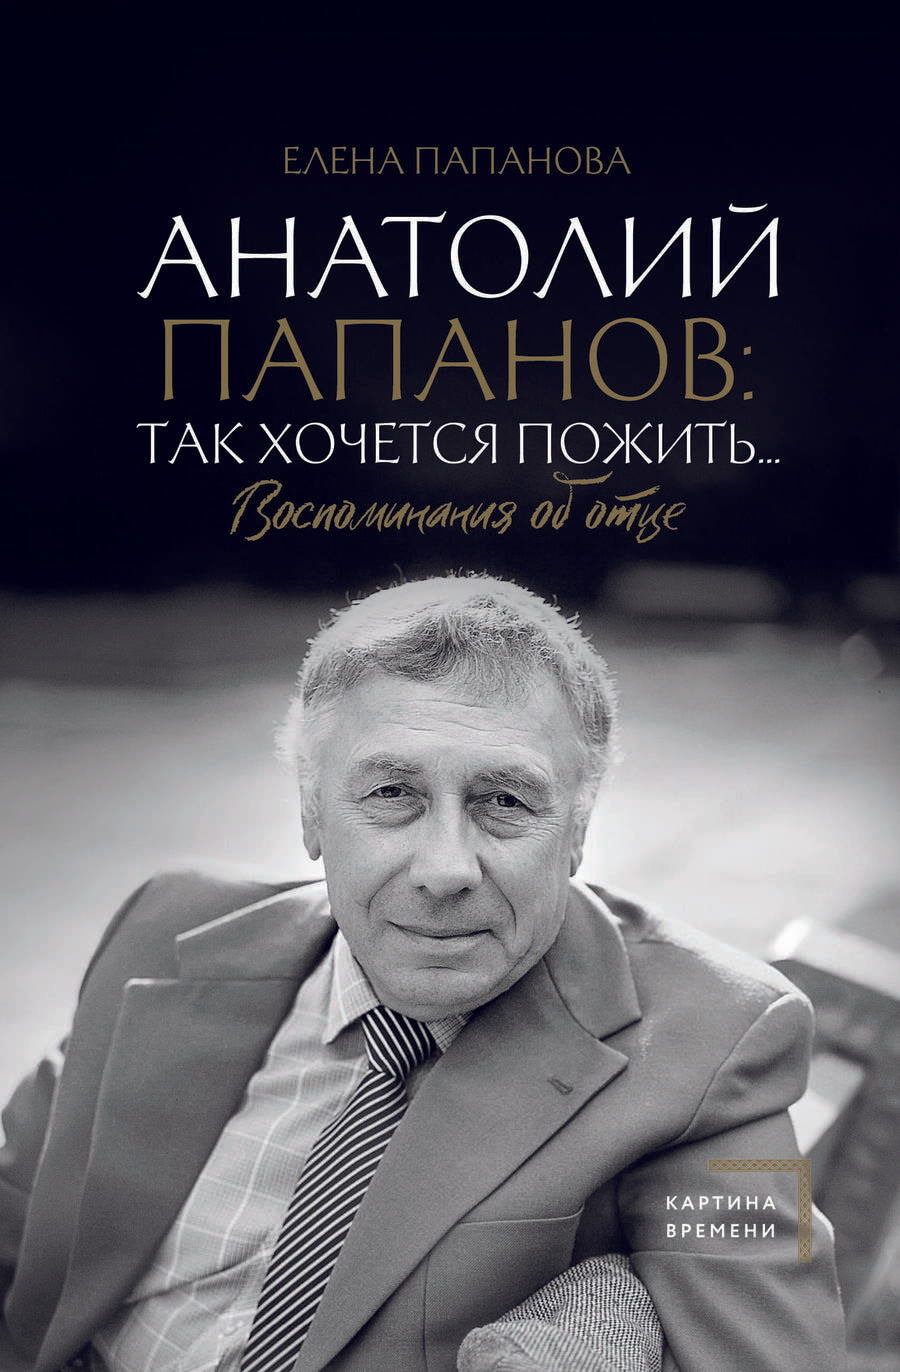 Обложка книги "Папанова: Анатолий Папанов. Так хочется пожить... Воспоминания об отце"